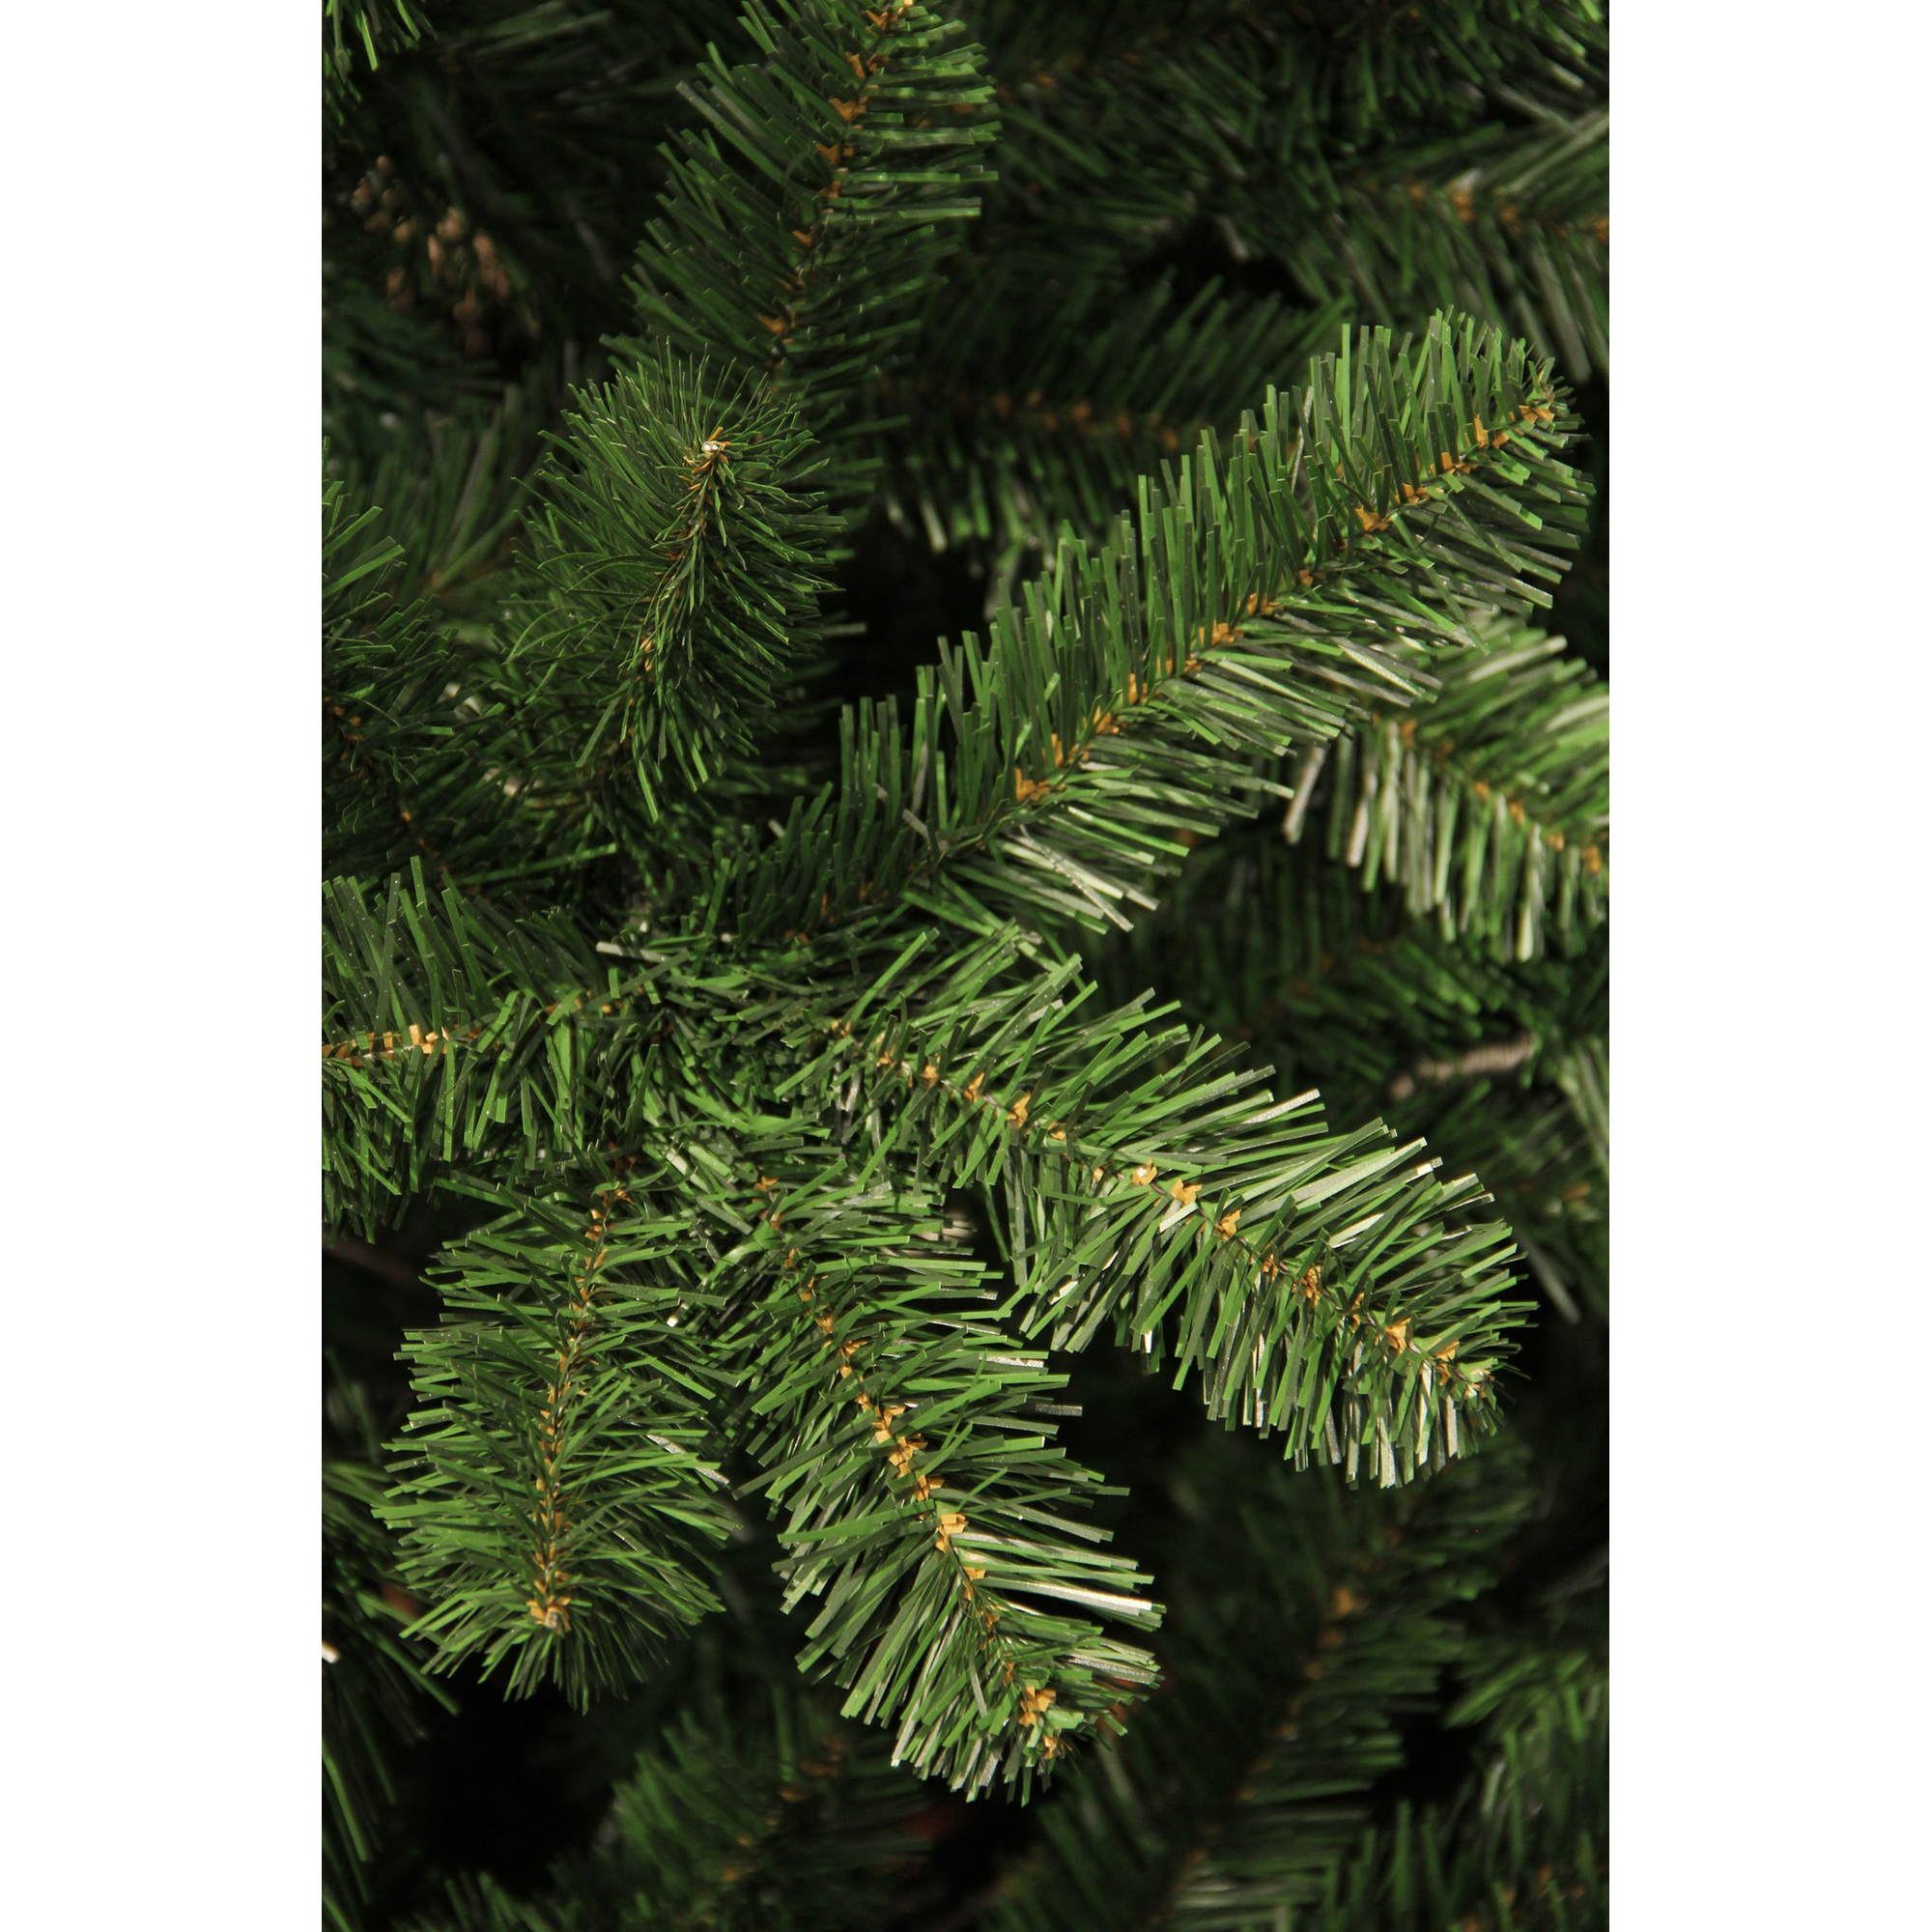 Künstlicher Weihnachtsbaum 'Charlton' grün 185 cm, mit LED-Beleuchtung + product picture